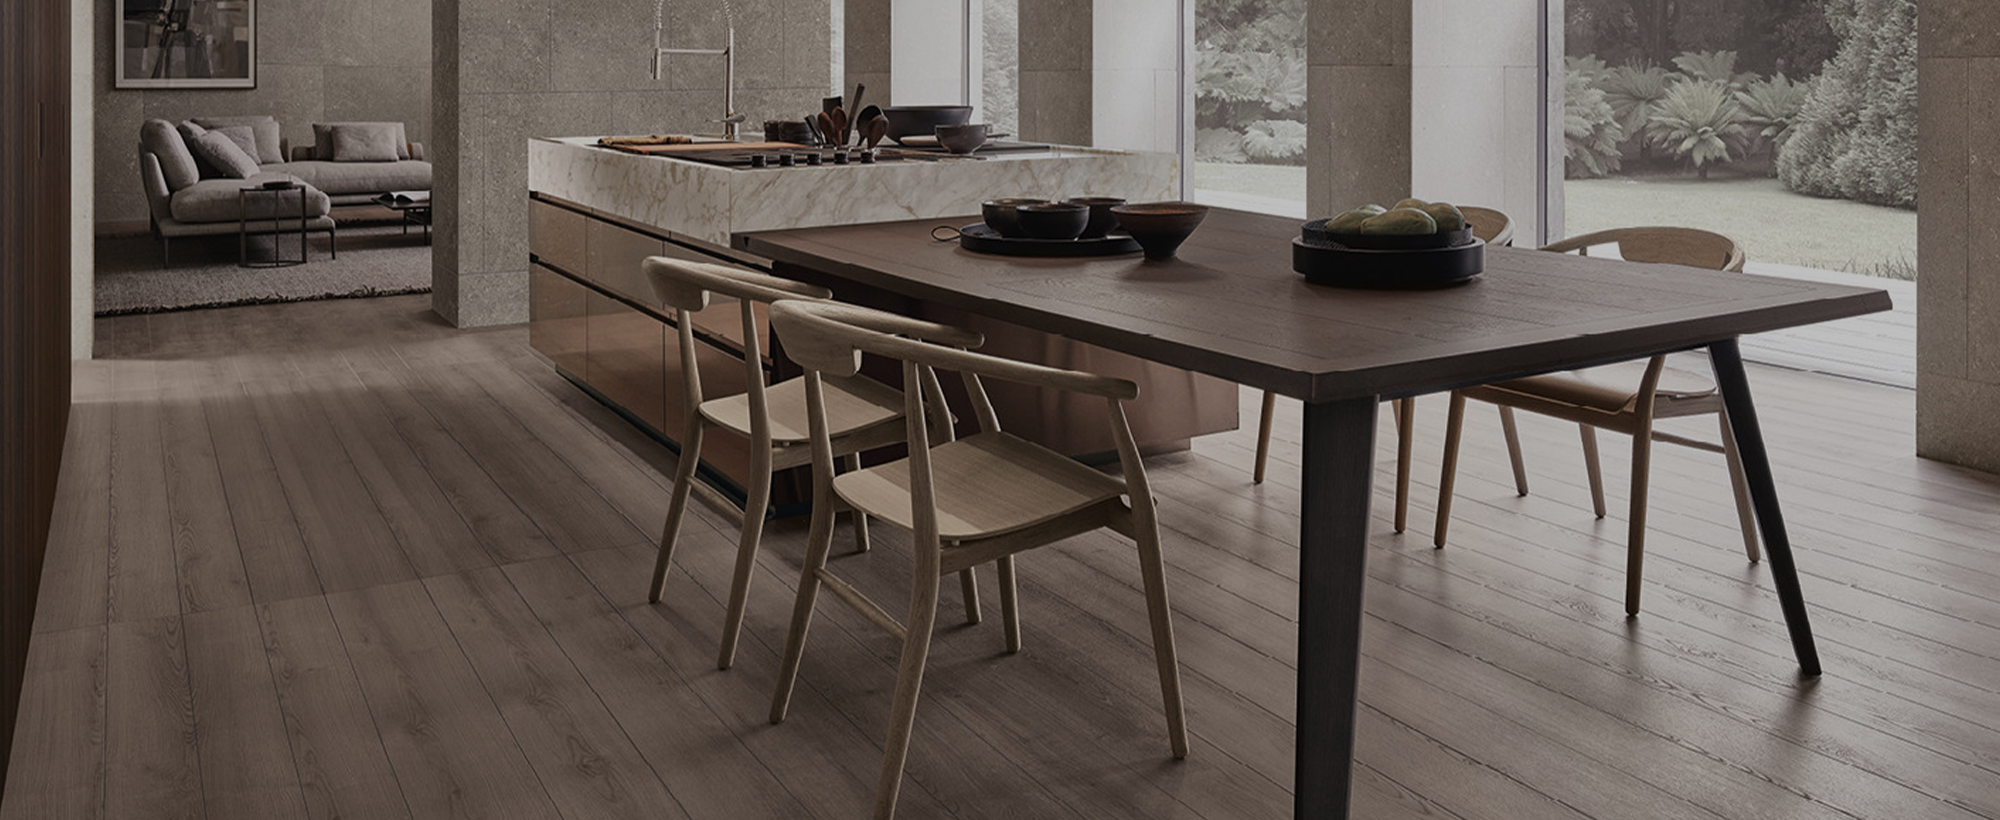 Las mejores mesas de cocina de diseño y estilo moderno